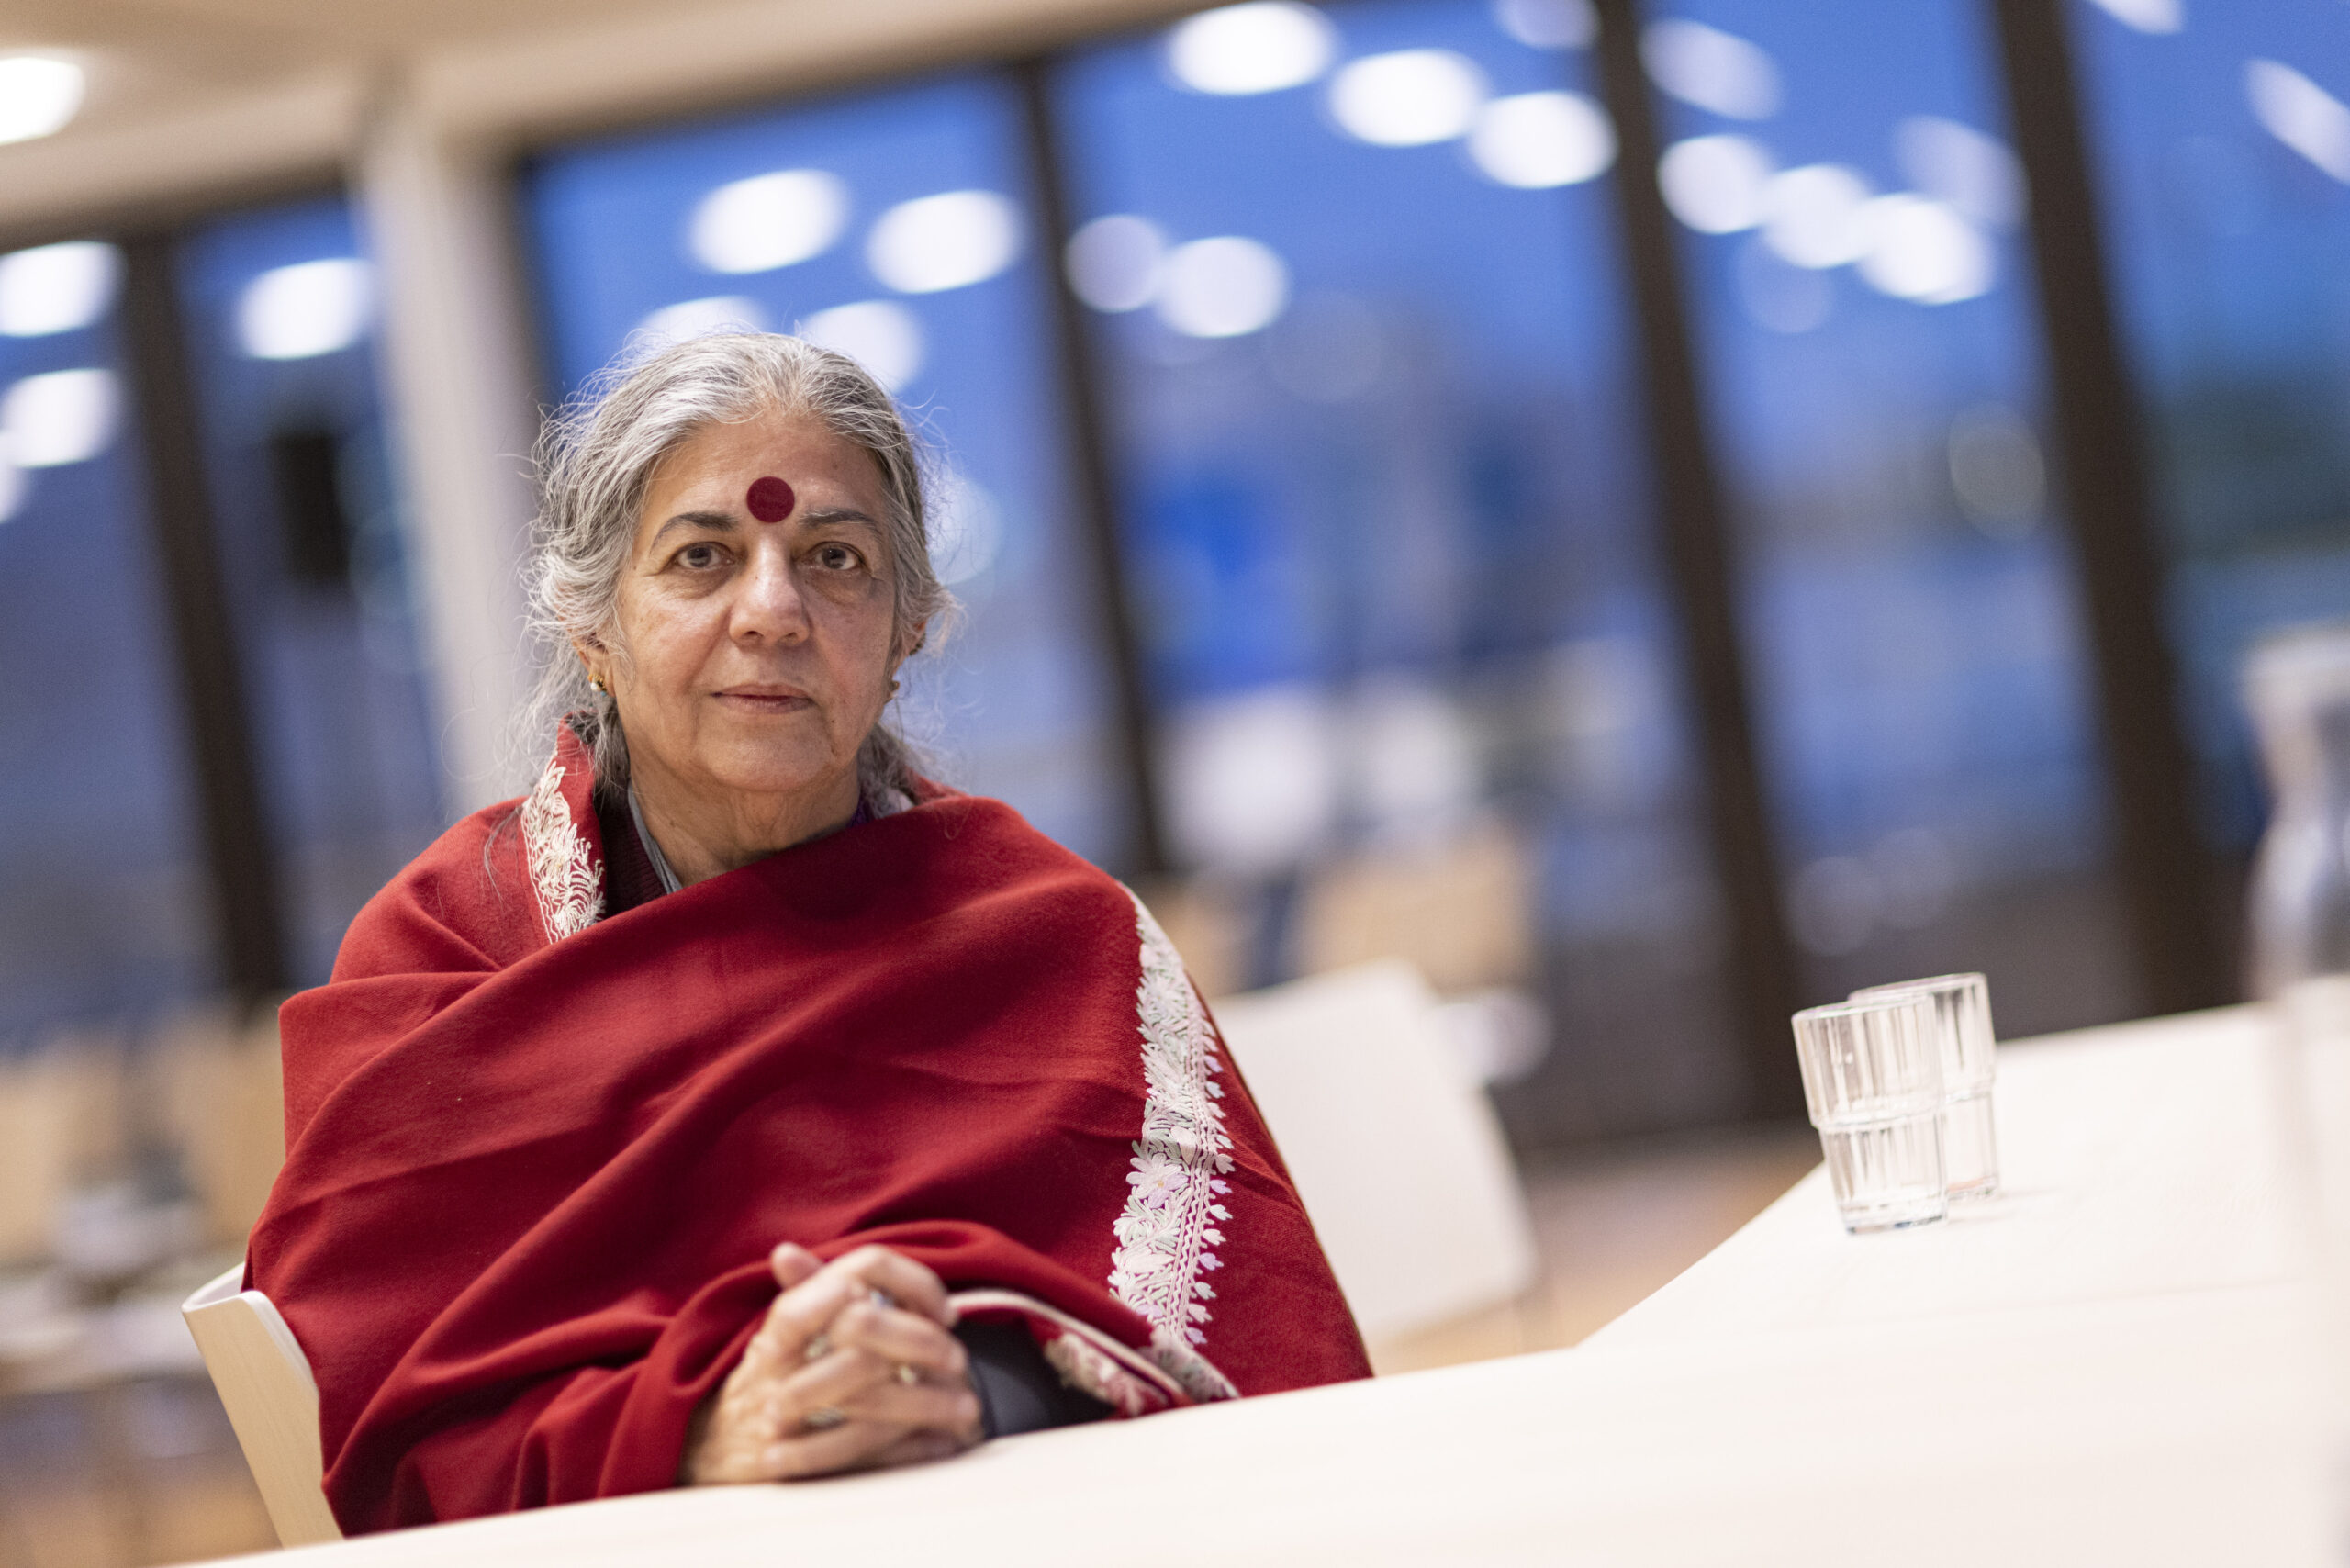 Vandana Shiva ist eine weltweite Aktivistin, die das Ernährungssystem verändern will. Am Freitag war sie in Hamburg zu Besuch.